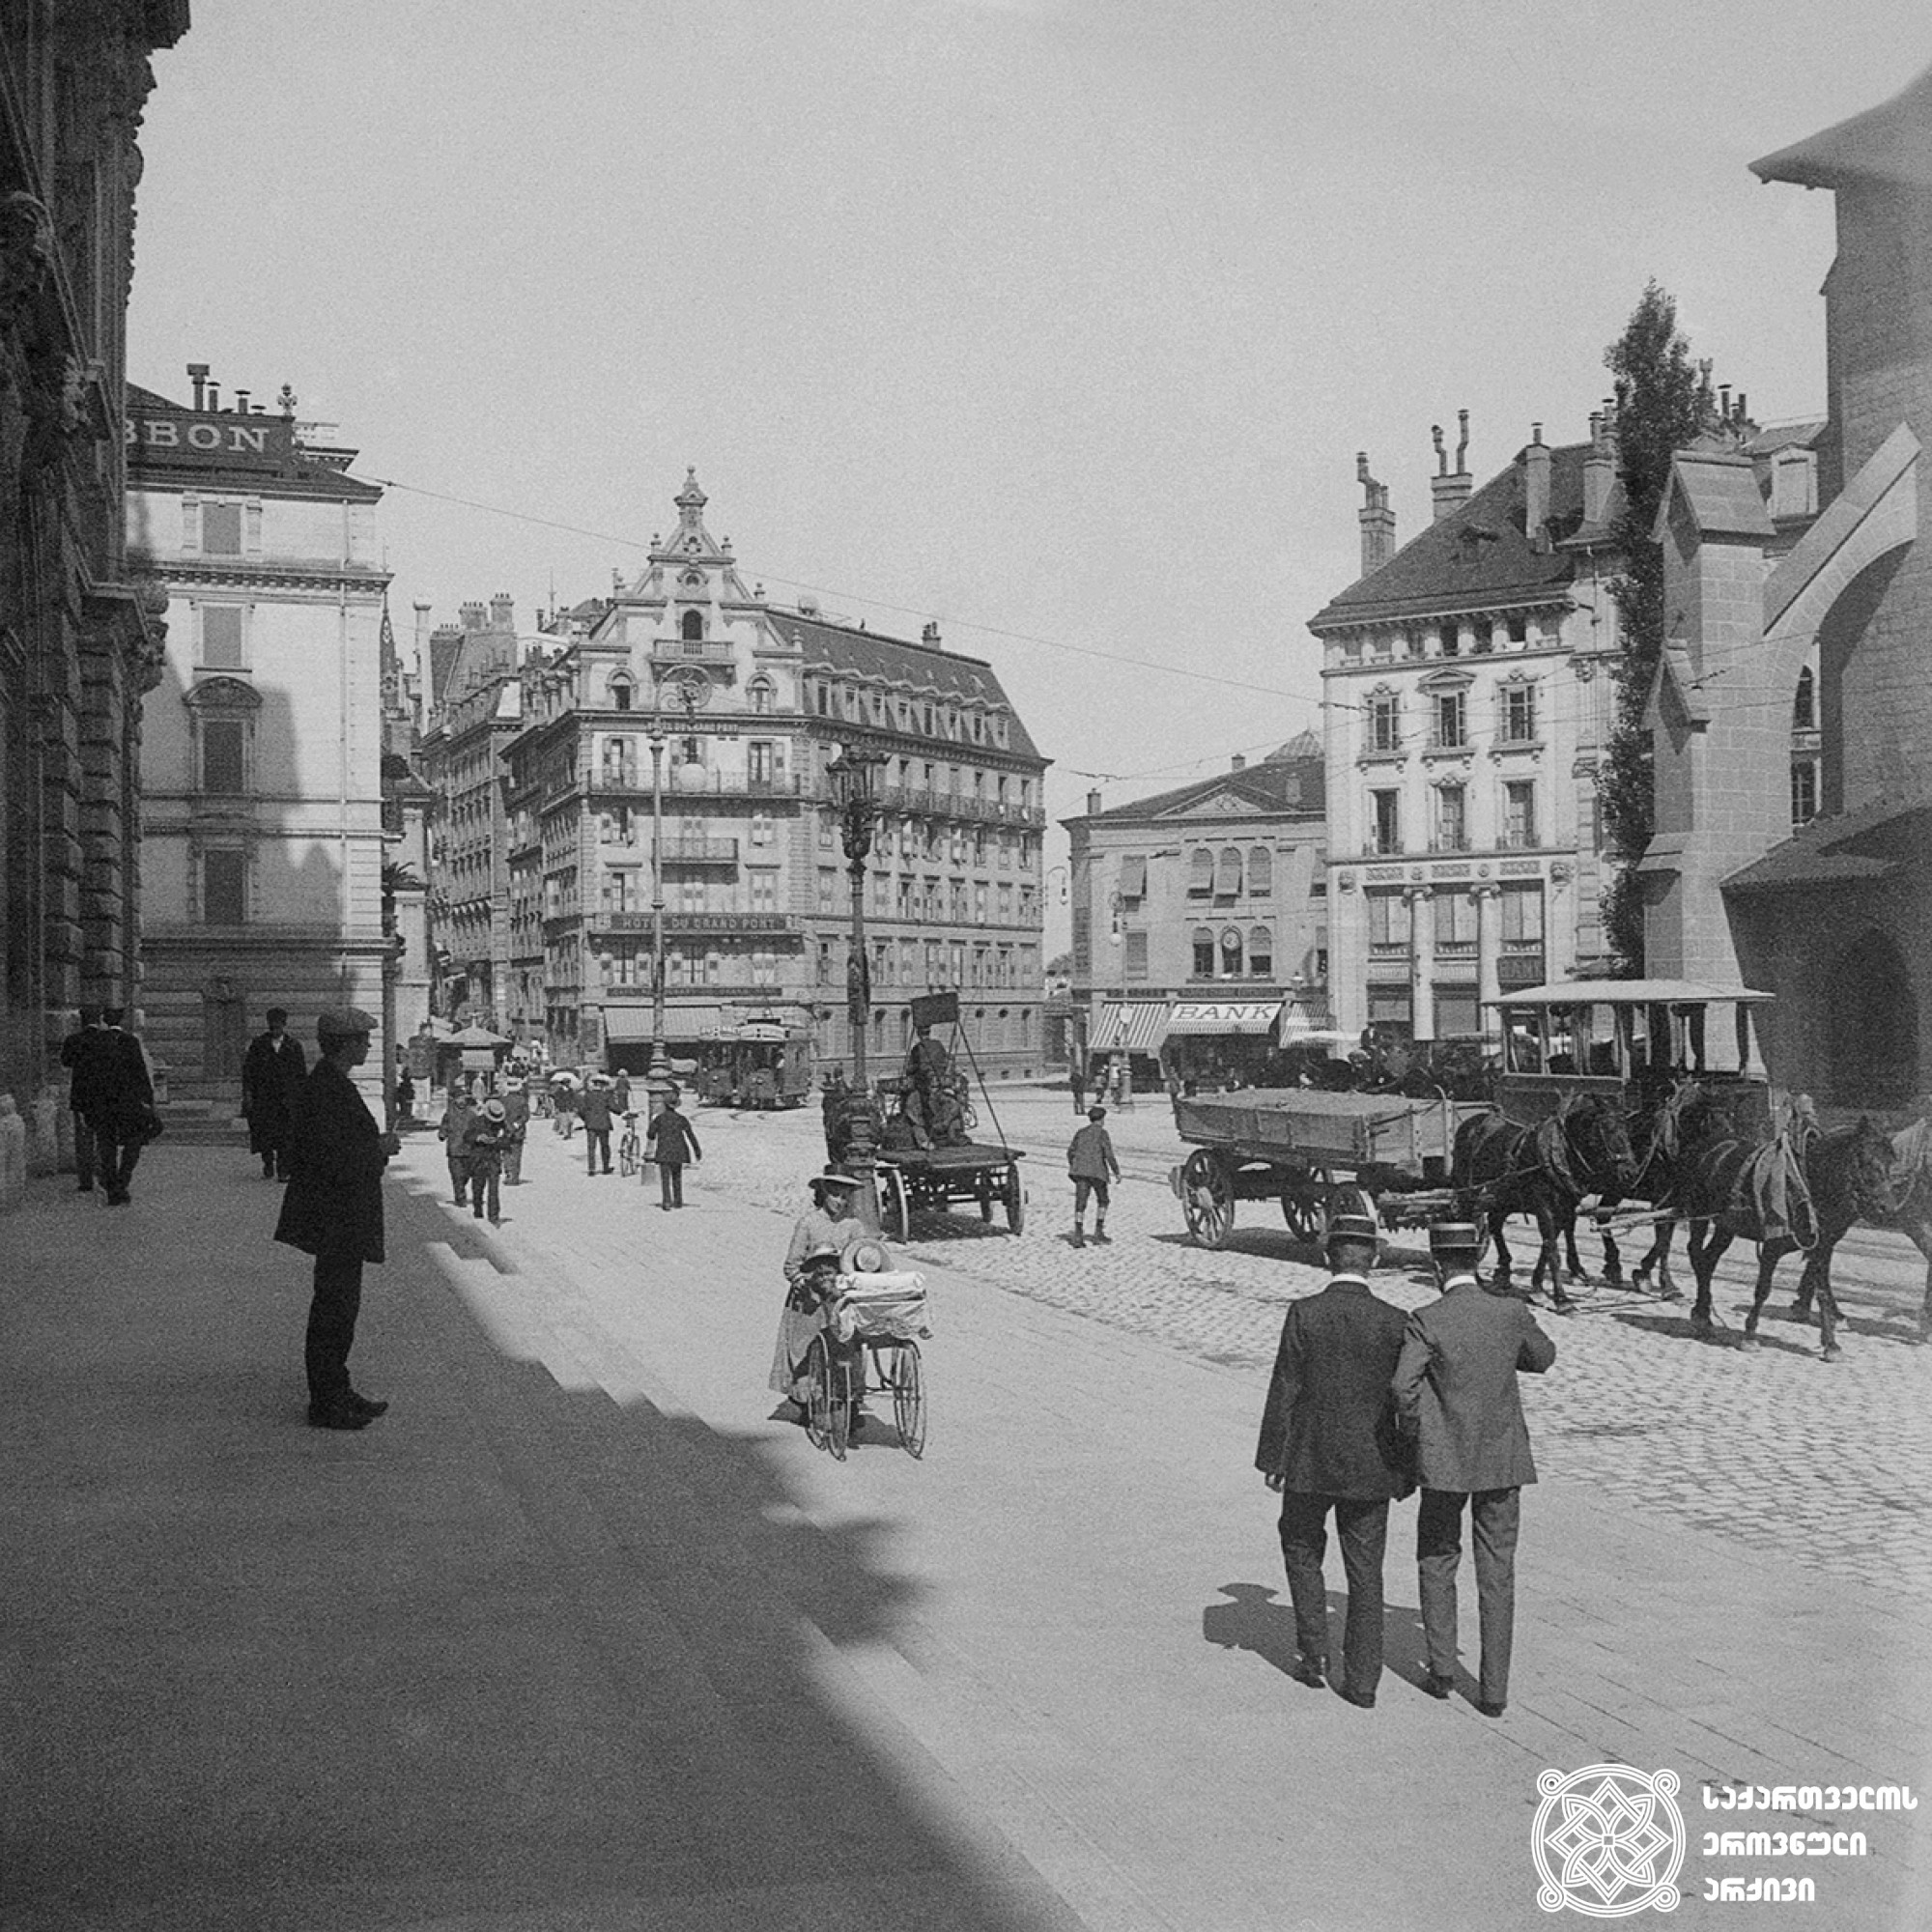 ლოზანა, შვეიცარია <br>
1909 წელი <br>
გიგლო ყარალაშვილის კოლექცია <br>

Lausanne, Switzerland <br>
1909  <br>
Giglo Karalashvili collection